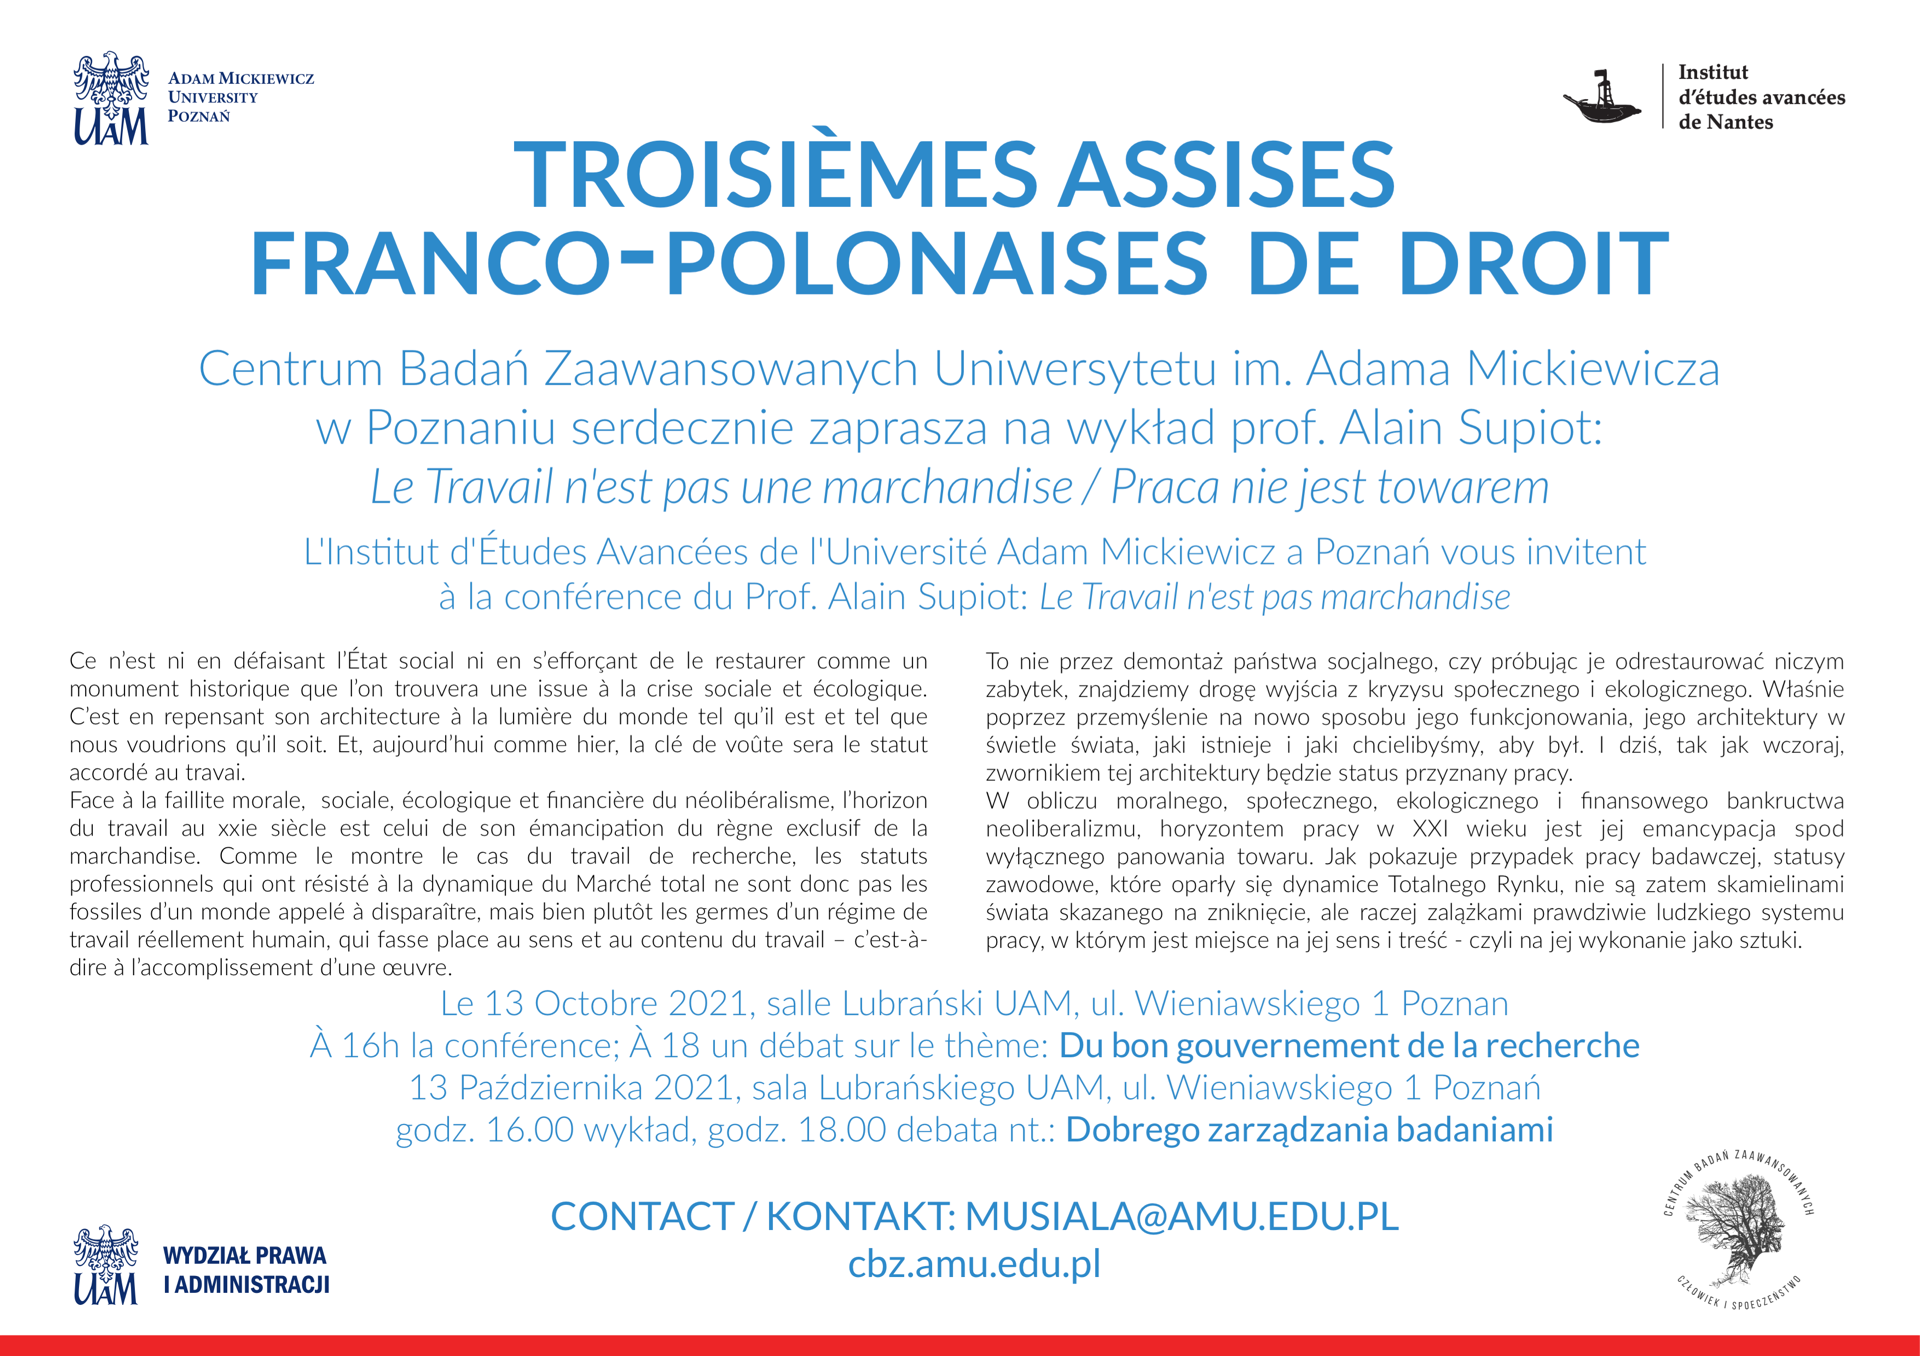 Troisièmes Assises franco-polonaises de droit - CBZ UAM: Seminarium prof. Alain Supiot - Praca nie jest towarem, 13.10.2021 Anna Musiała